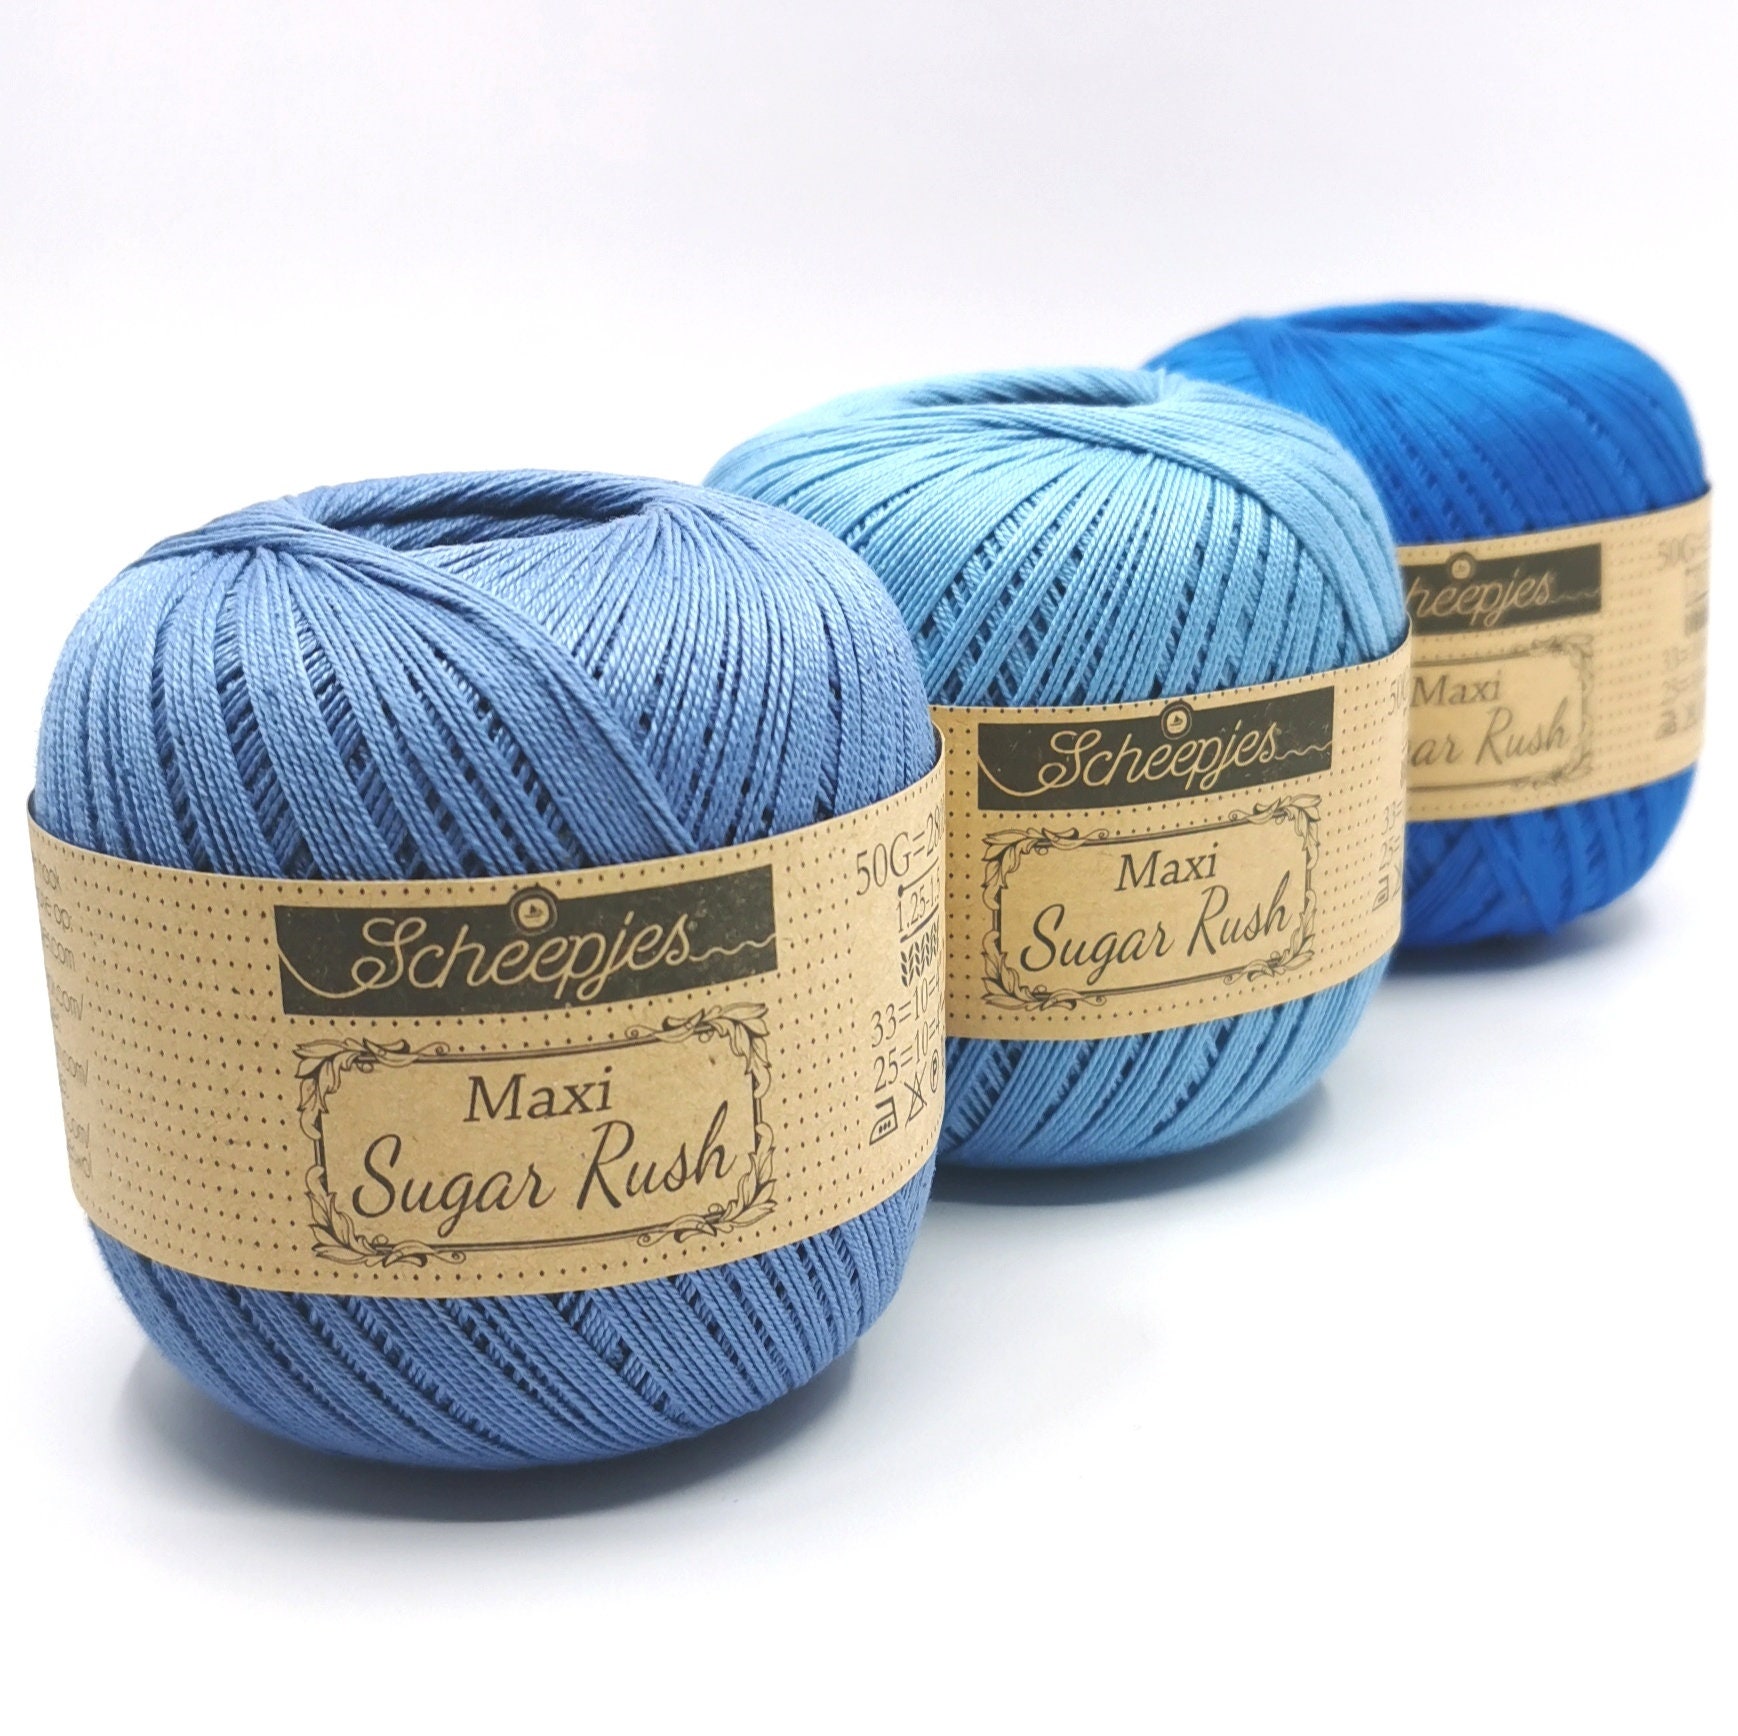 Mimi's Place - Hilo Crochet 100% algodón mercerizado. 🥰 un producto de  calidad para proyectos de calidad 😊 #mimisplacegt #hilocrochet #hilo  #tejido #crochet #tricot #algodon #mercerizado